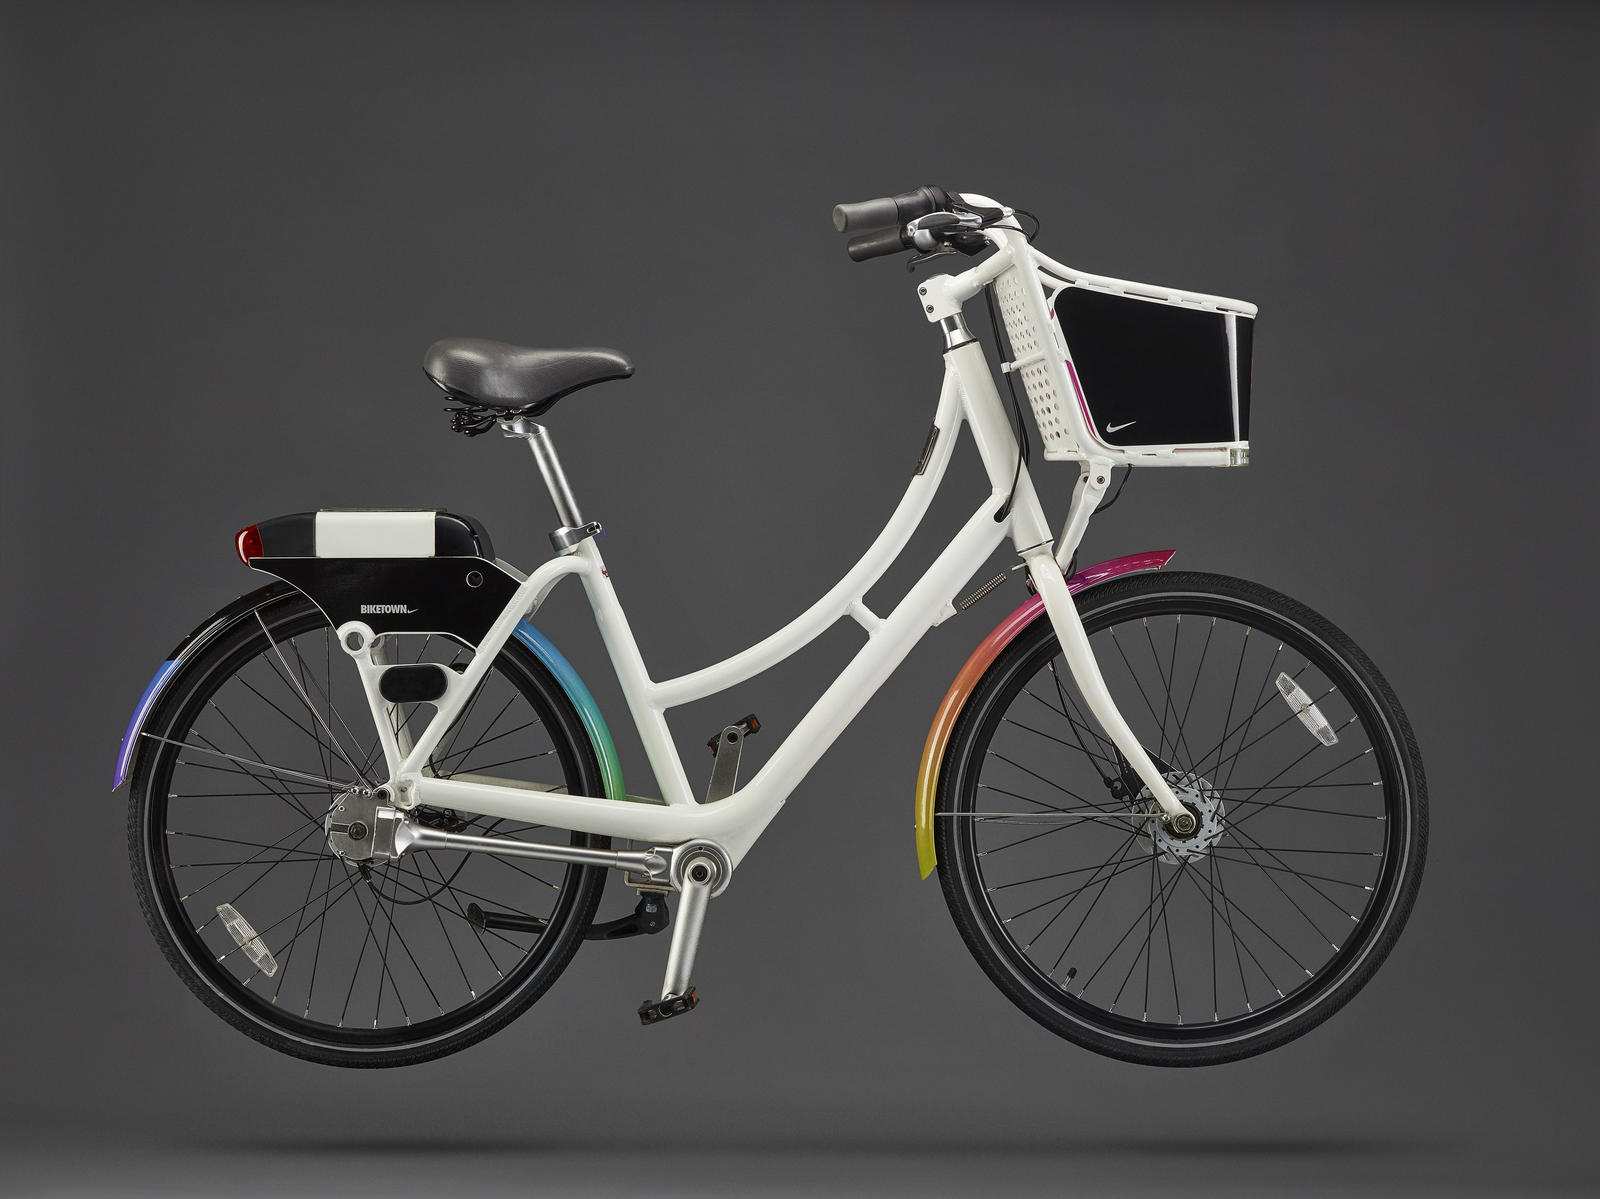 Roca restaurante huella dactilar Nike diseña una bici para celebrar el mes del Orgullo LGTB